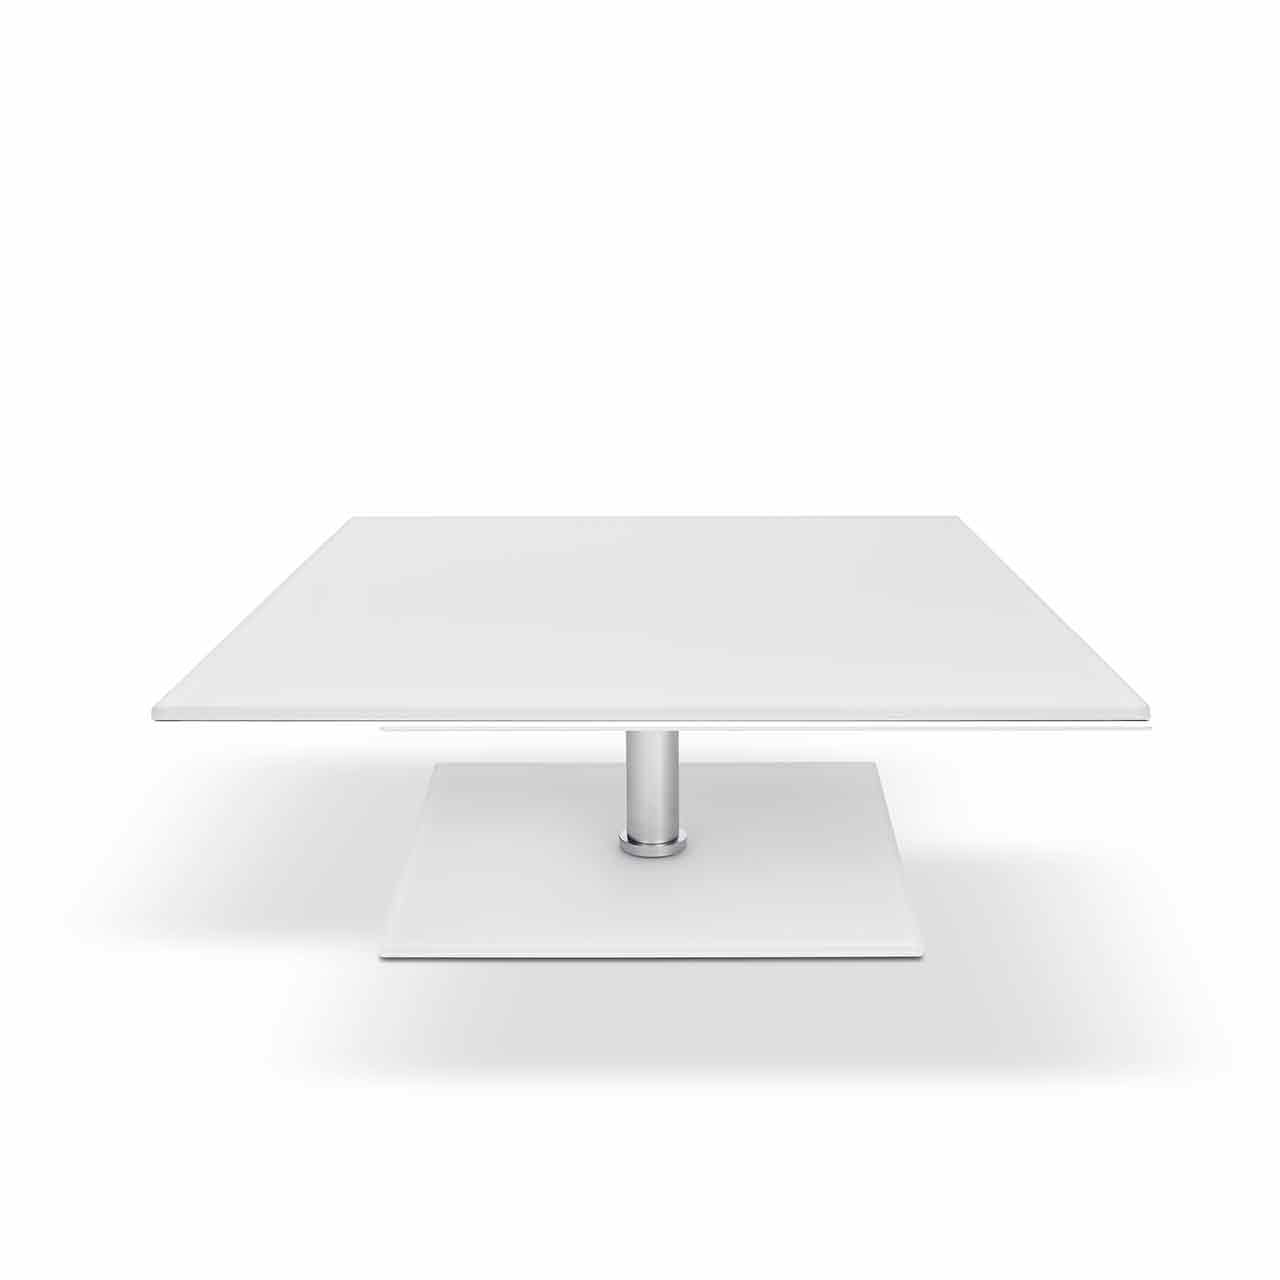 Ronald Schmitt – Fixus P 590 | Tischplatte Optiwhite Nano weiß lackiert, Säule Edelstahl mattiert, Bodenplatte weiß lackiert